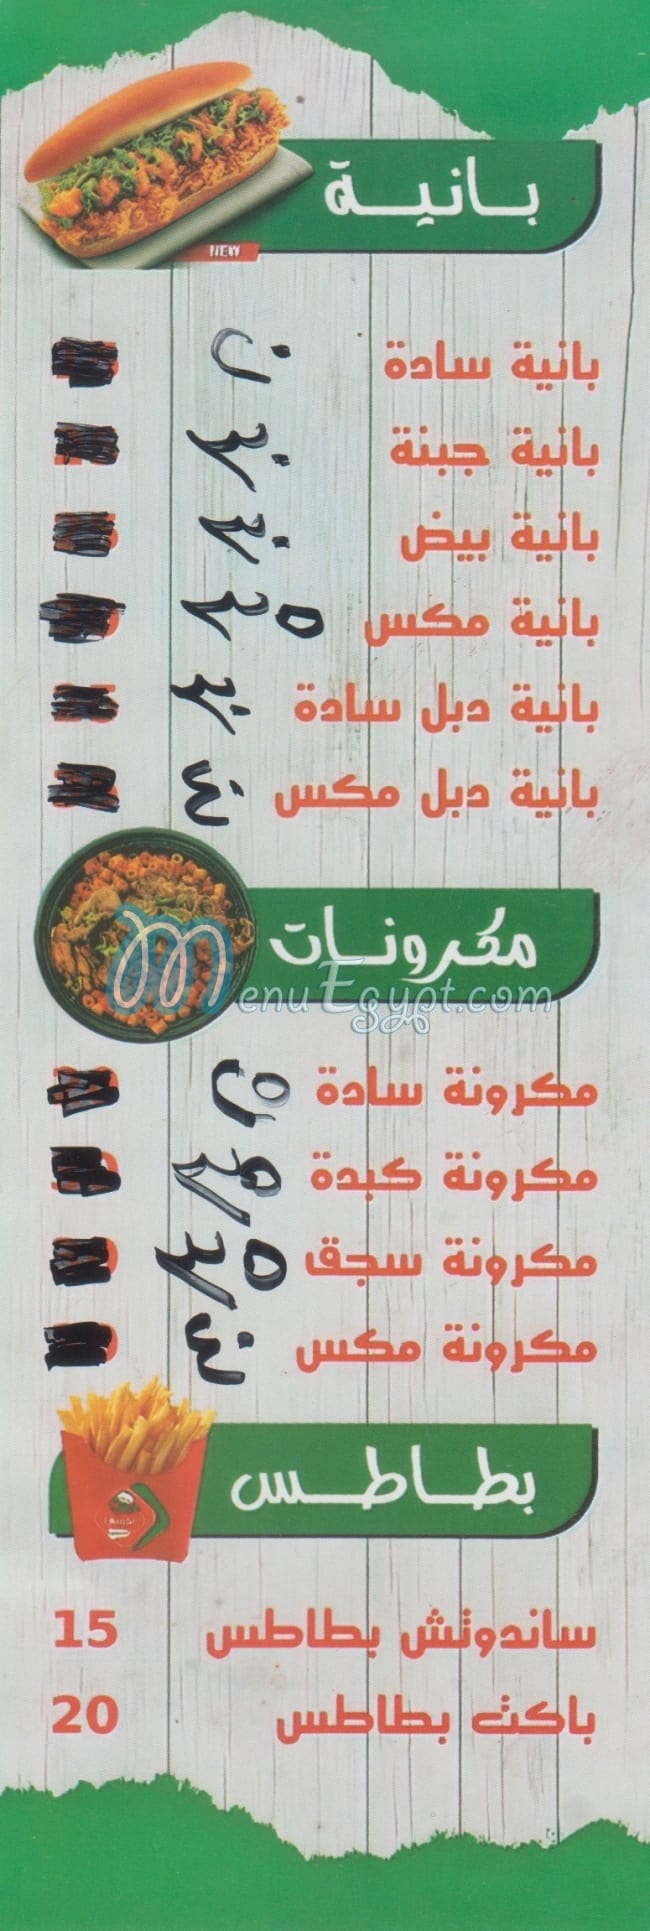 Abo Rabi3 menu Egypt